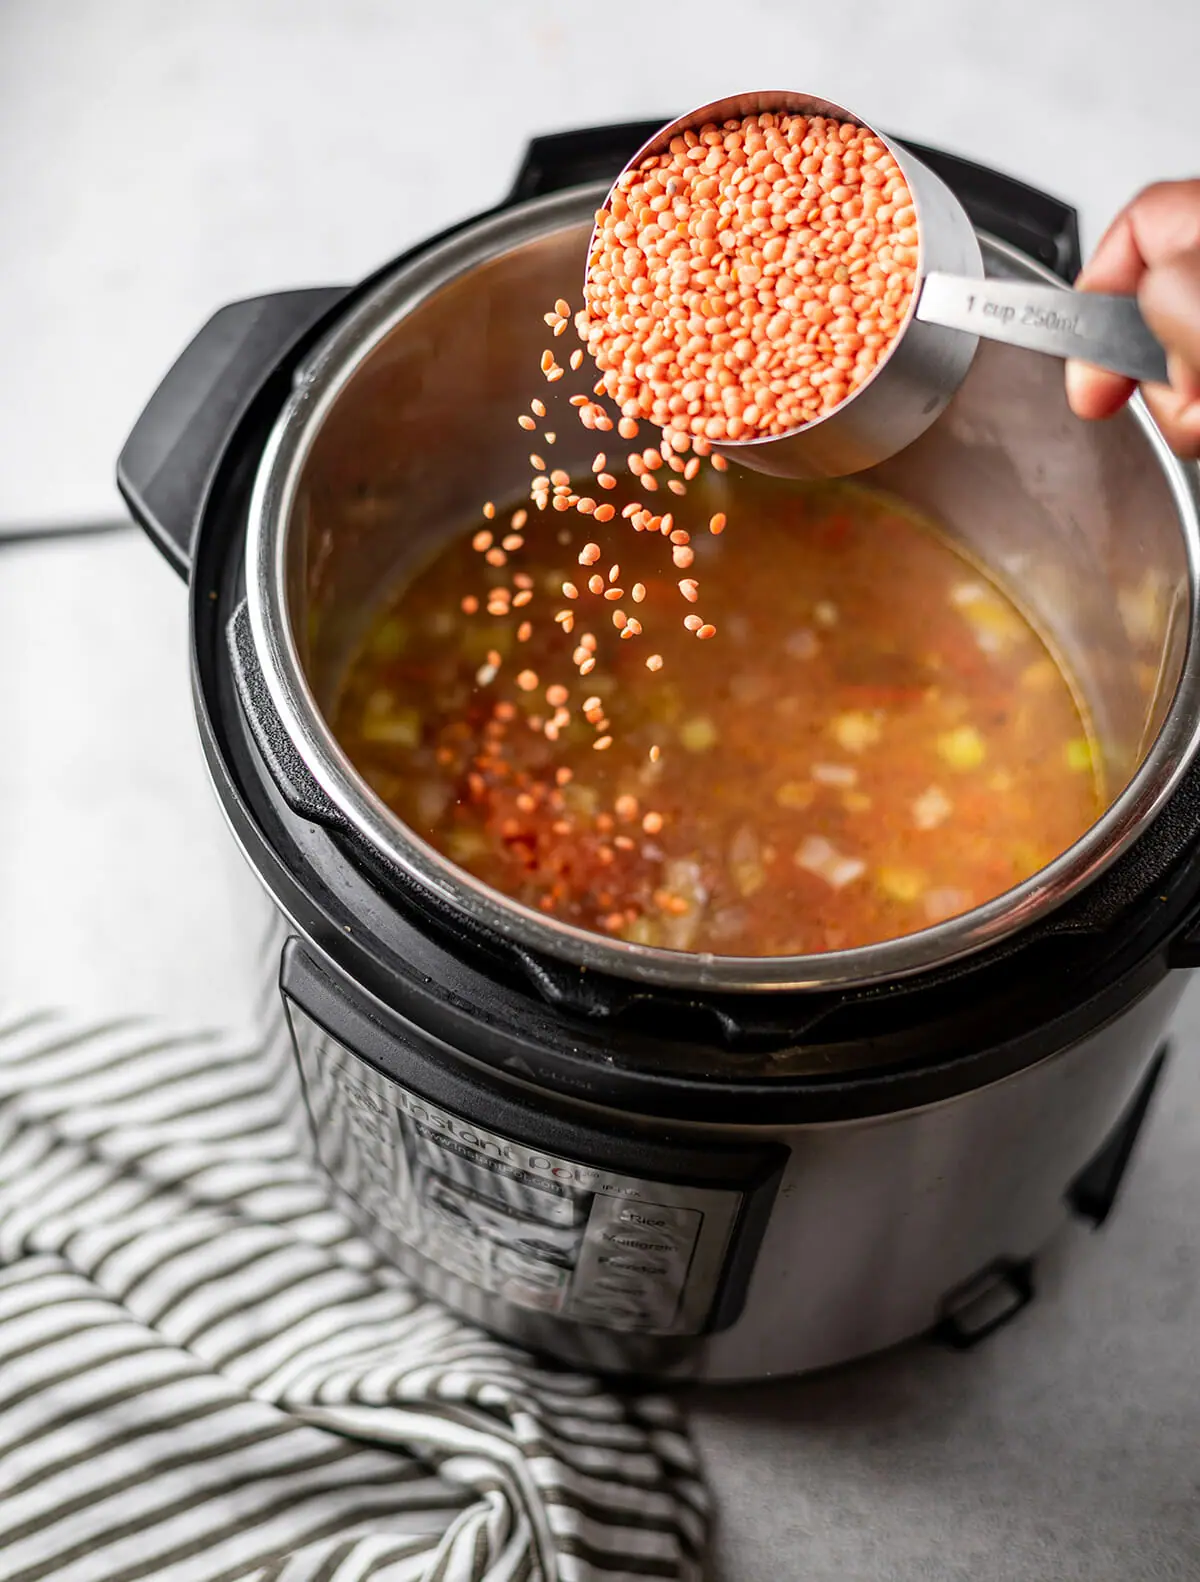 Adding split red lentils to an Instant Pot to make red lentil soup.